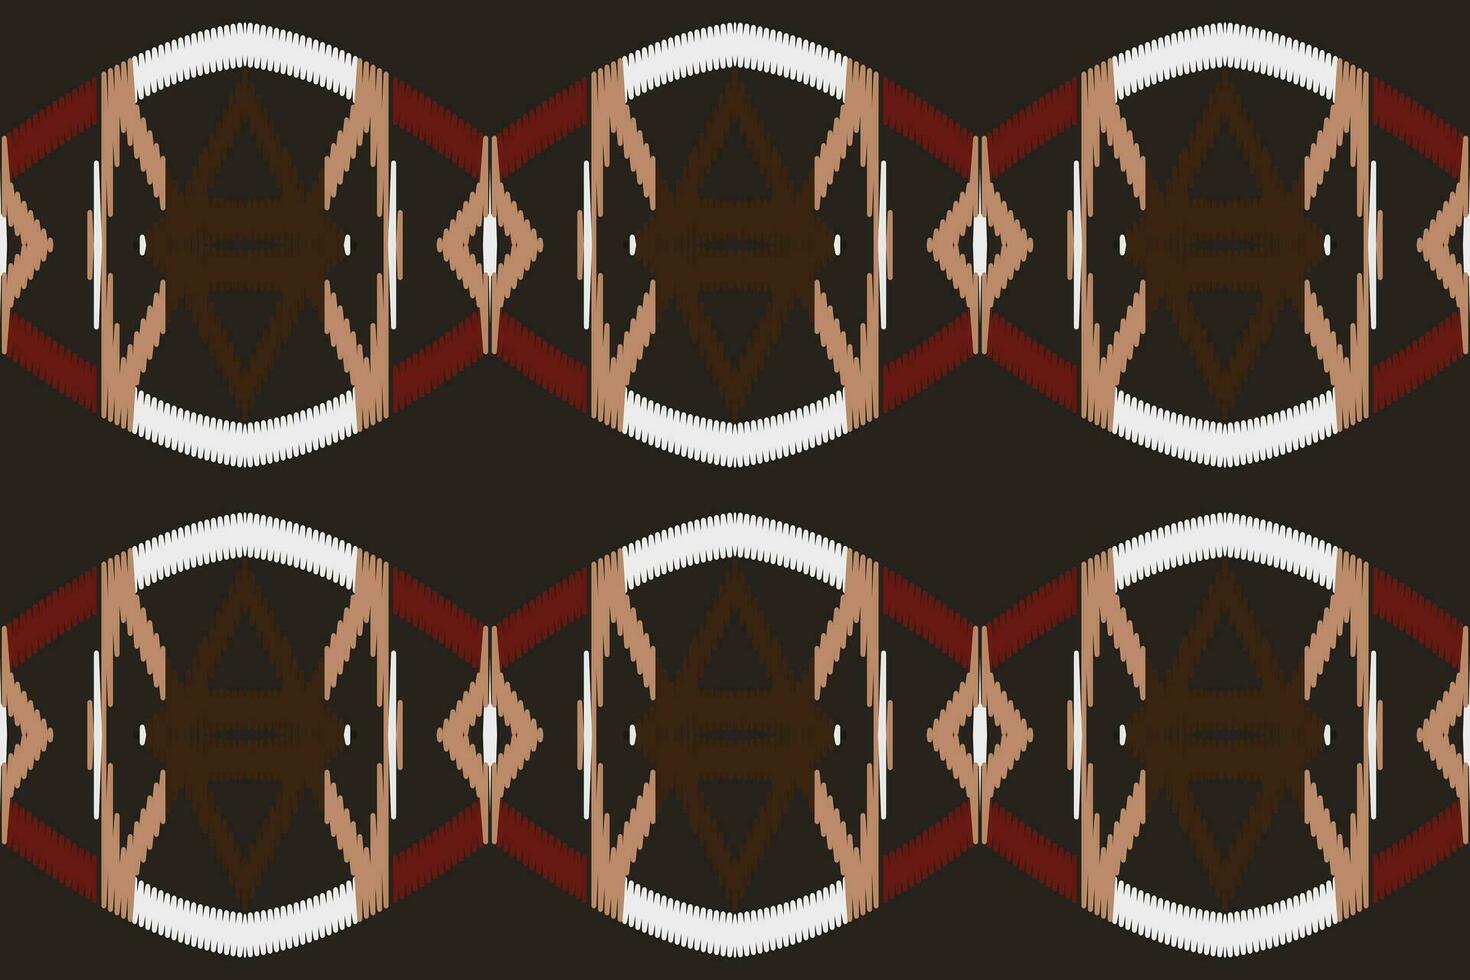 motiv ikat paisley broderi bakgrund. ikat tyg geometrisk etnisk orientalisk mönster traditionell.aztec stil abstrakt vektor illustration.design för textur, tyg, kläder, inslagning, sarong.